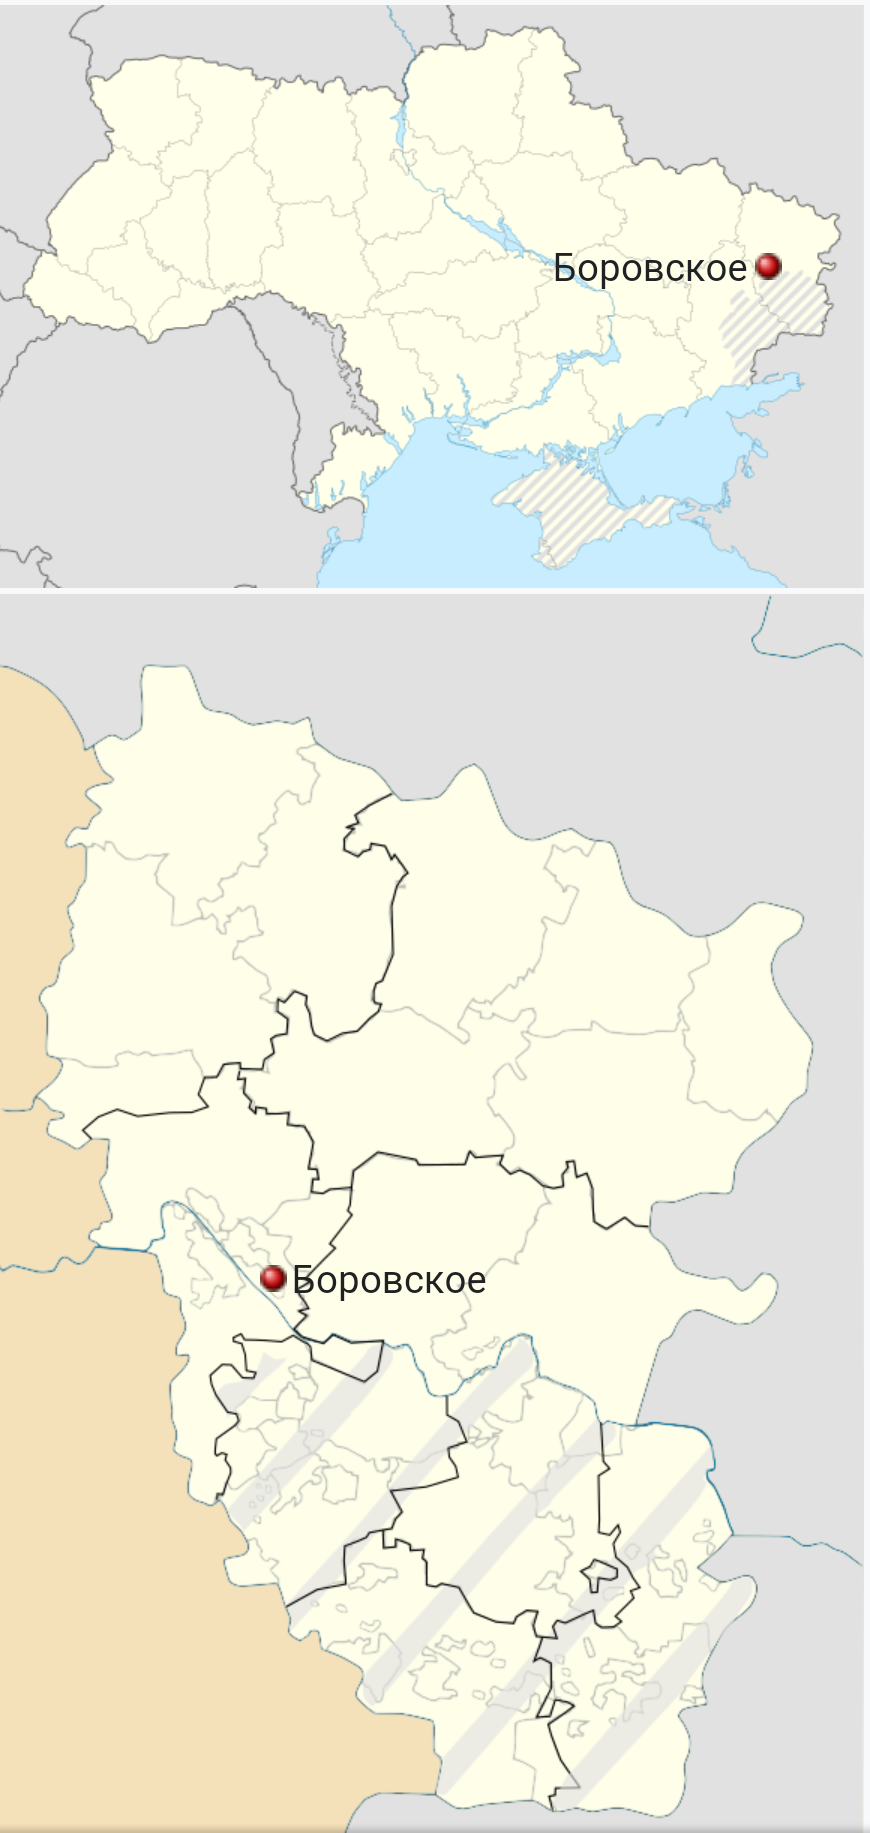 Боровское на картах Украины и Луганской обл. - Screenshot_20211222-142447~2.png